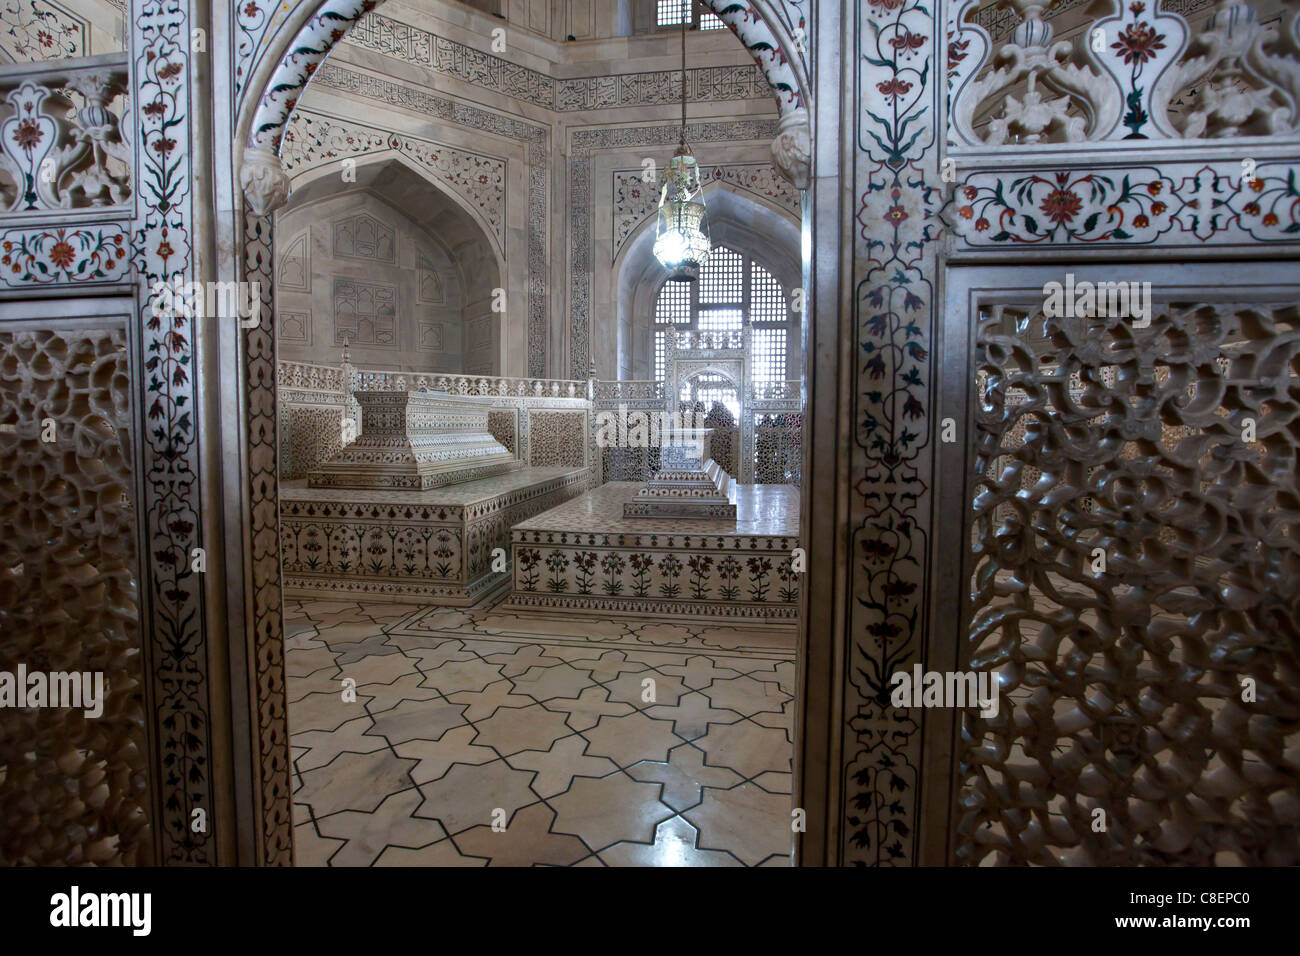 Das Taj Mahal Mausoleum Marmor Grab Schatullen von Shah Jahan und